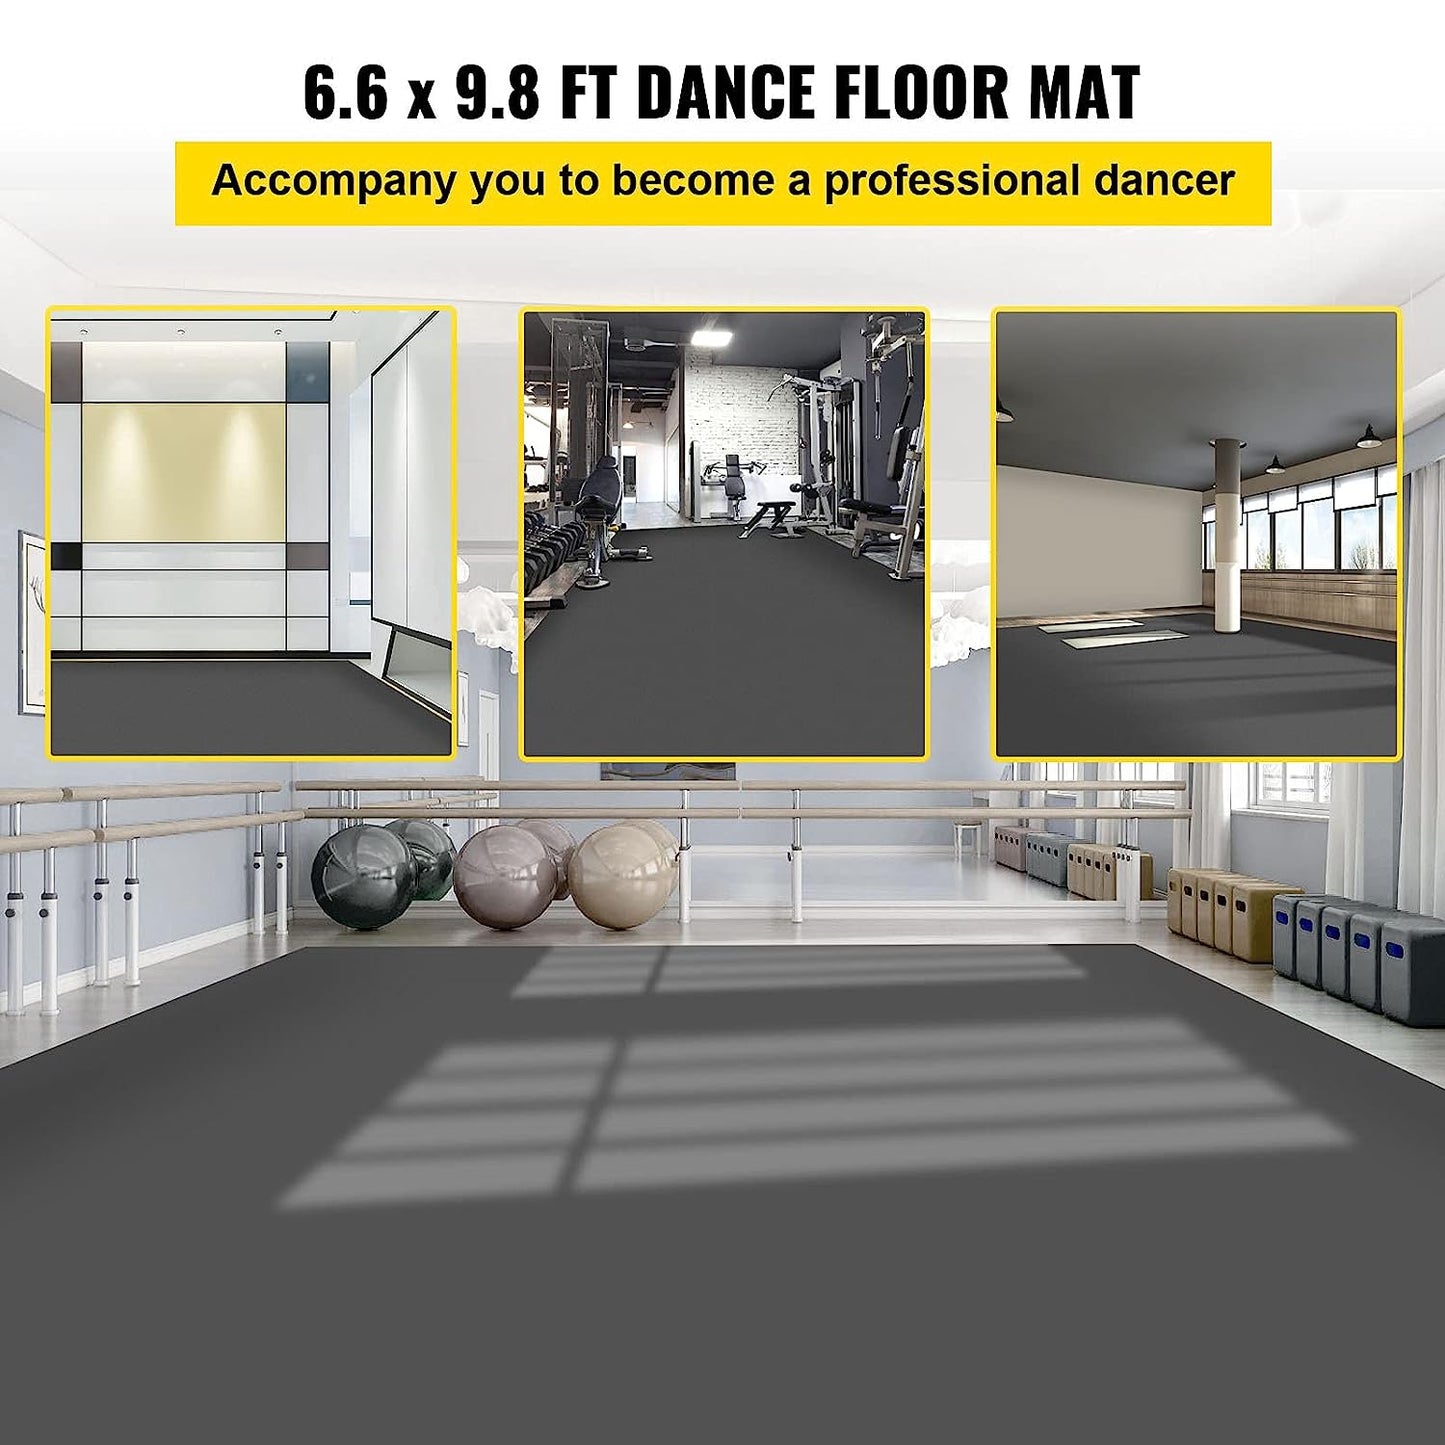 Dance Floor, 6.6x9.8ft Dance Floor Roll, 0.06in Thick PVC Vinyl Dance Floor, Black/Grey Reversible Portable Dance Floor, Non-Slip Dance Flooring, Ballet Dance Floor for Jazz, Pop, Lyrical Style